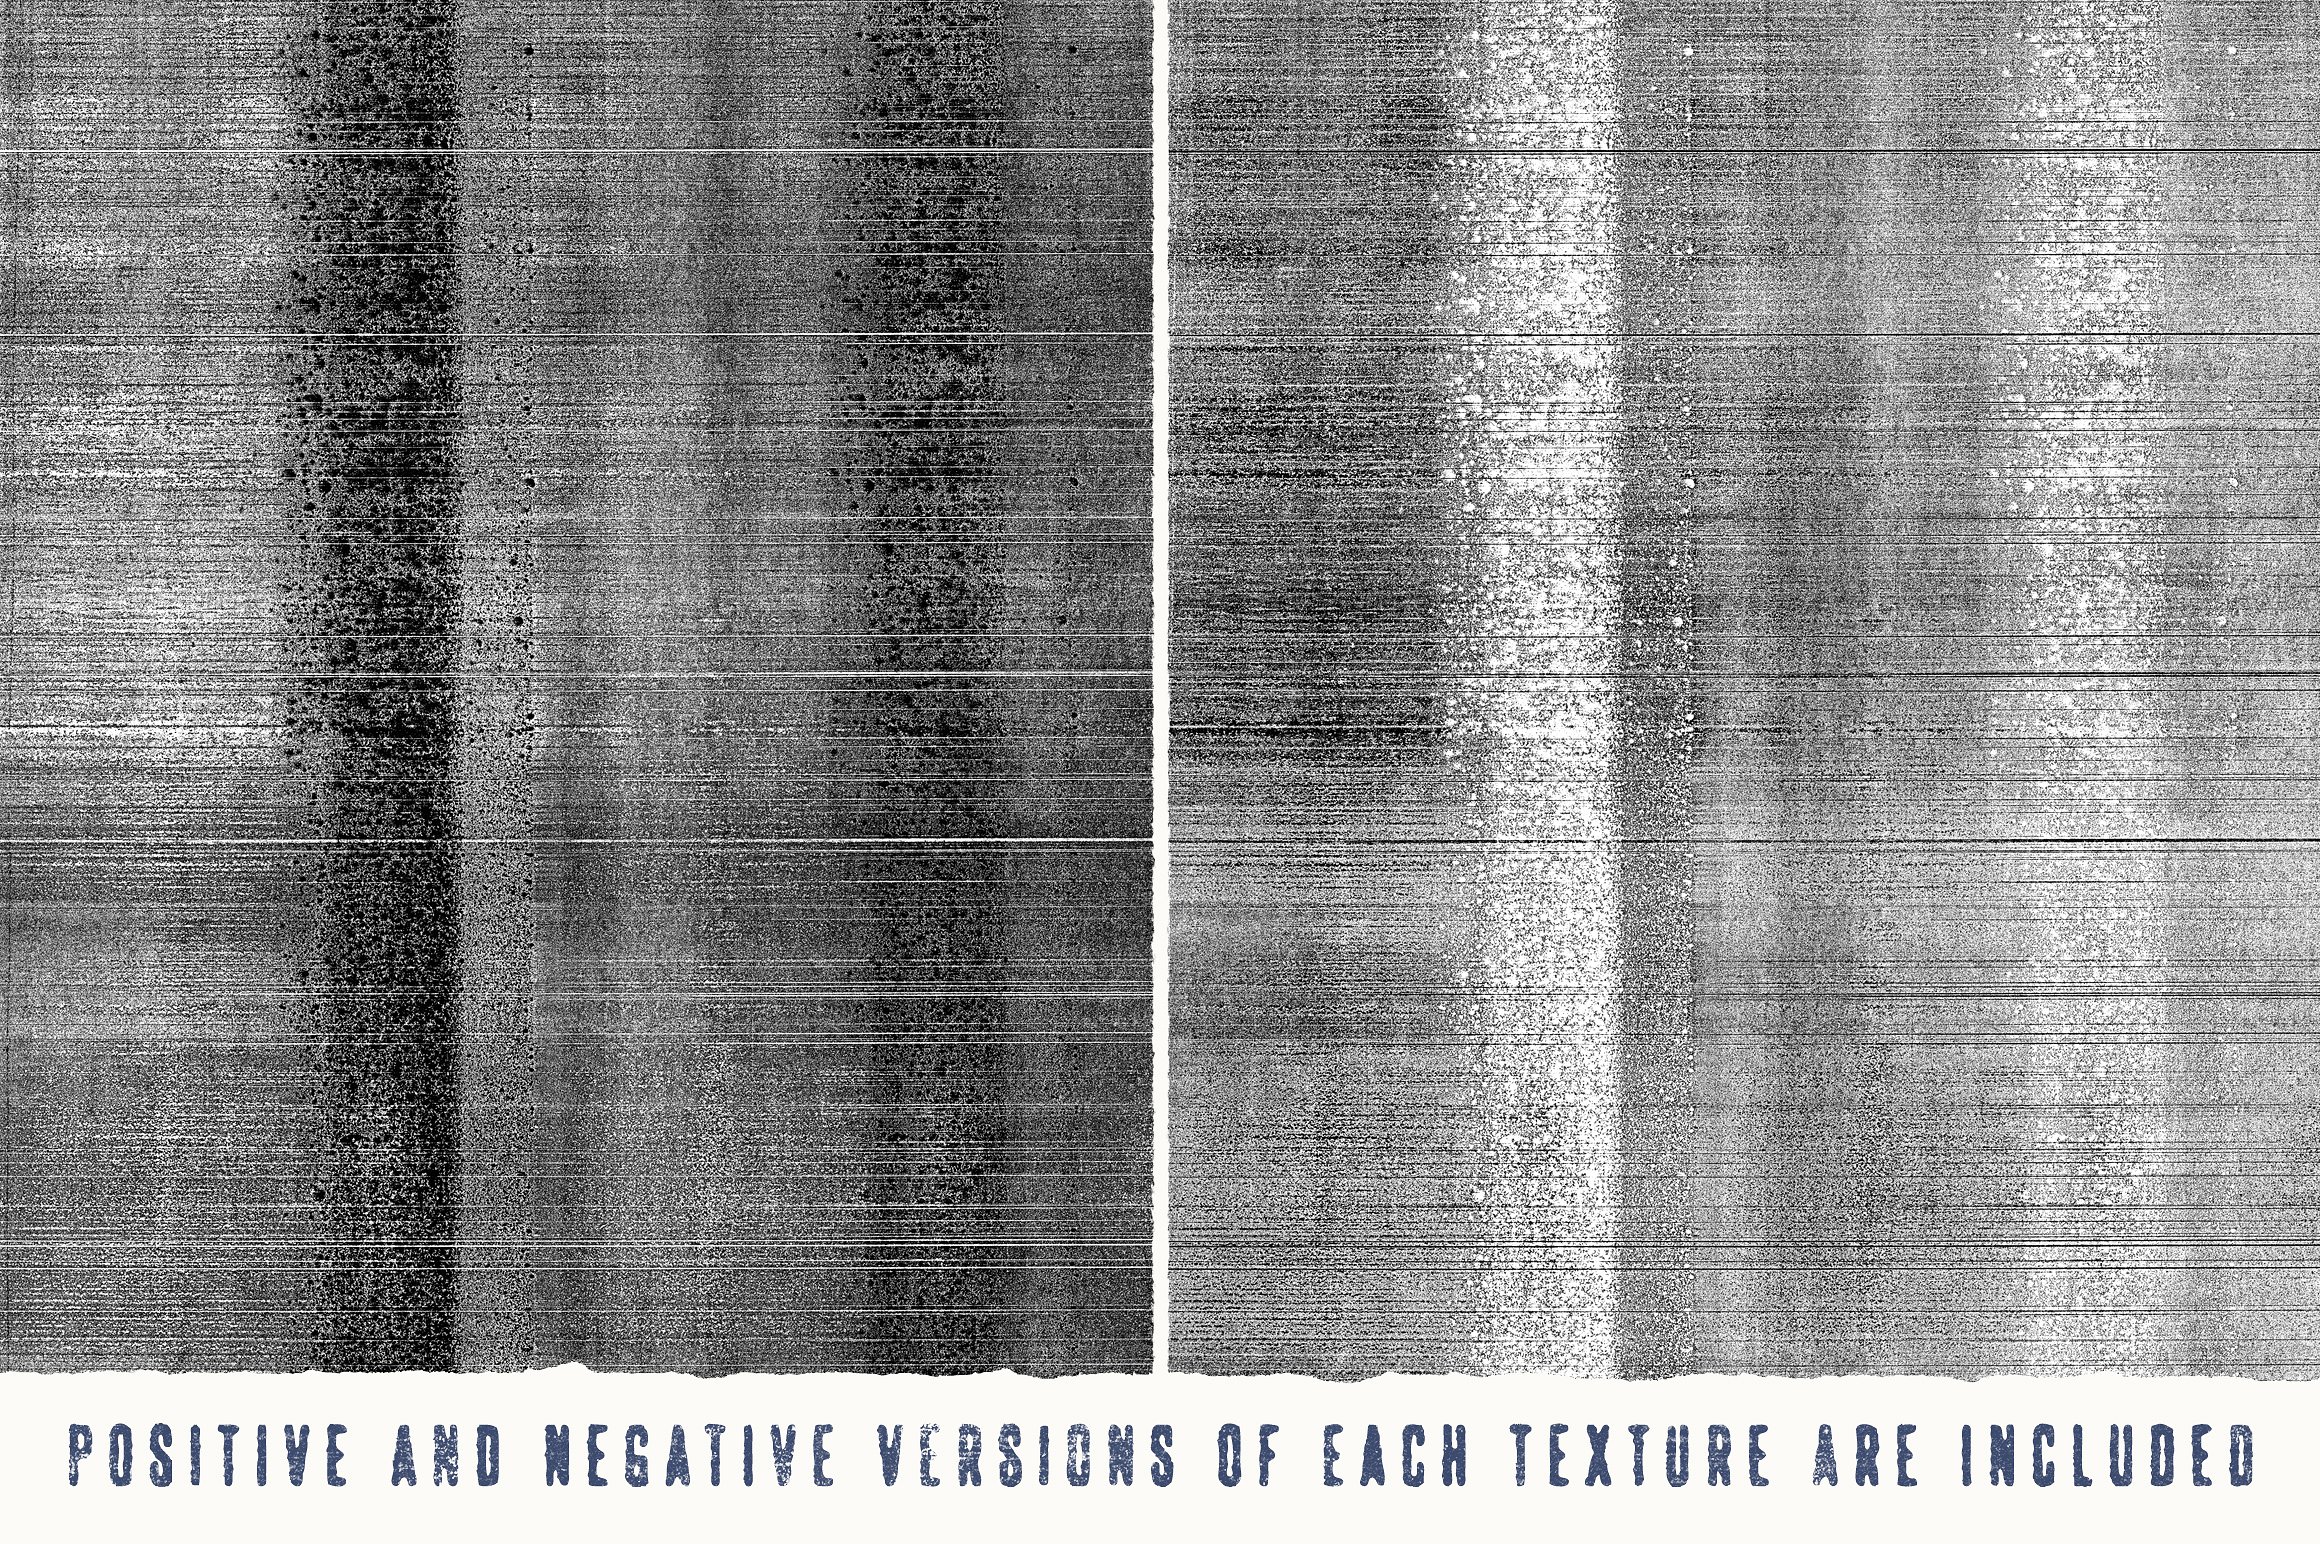 复印机影印纹理素材包 Dead Copier Photocopy Texture Pack插图(4)